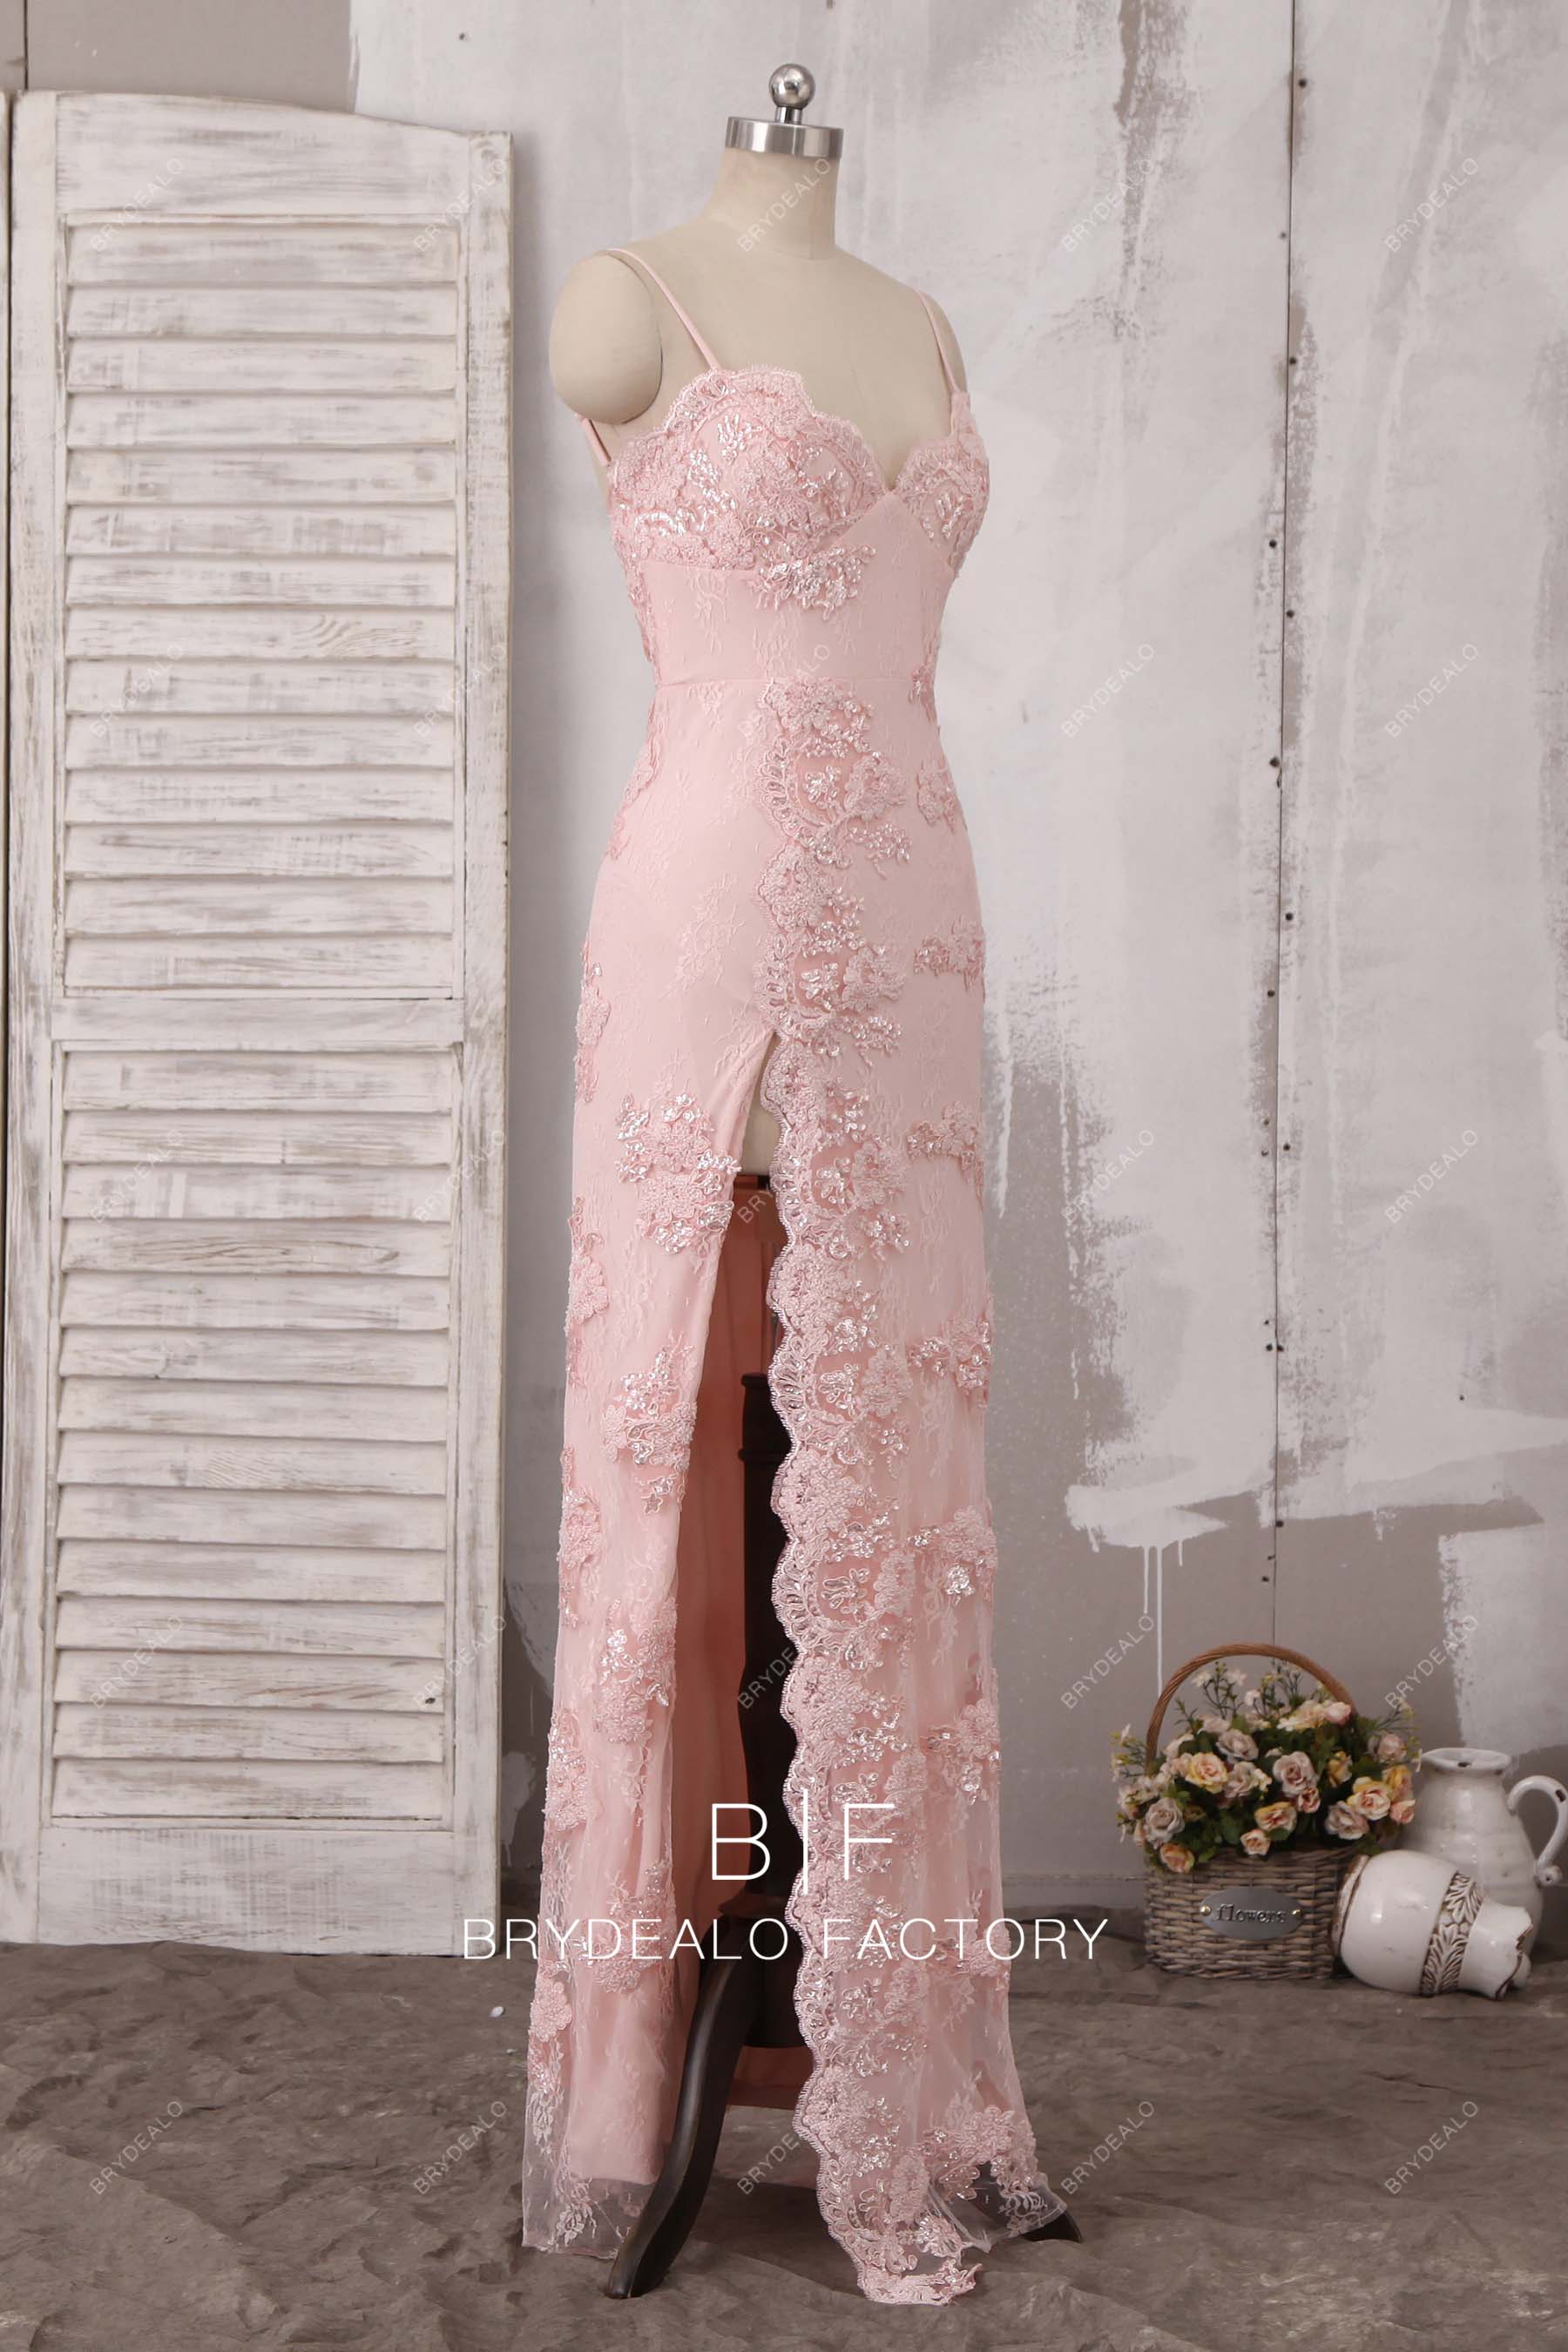 Pearled Spaghetti Straps Sheath Bridal Reception Dress - Xdressy